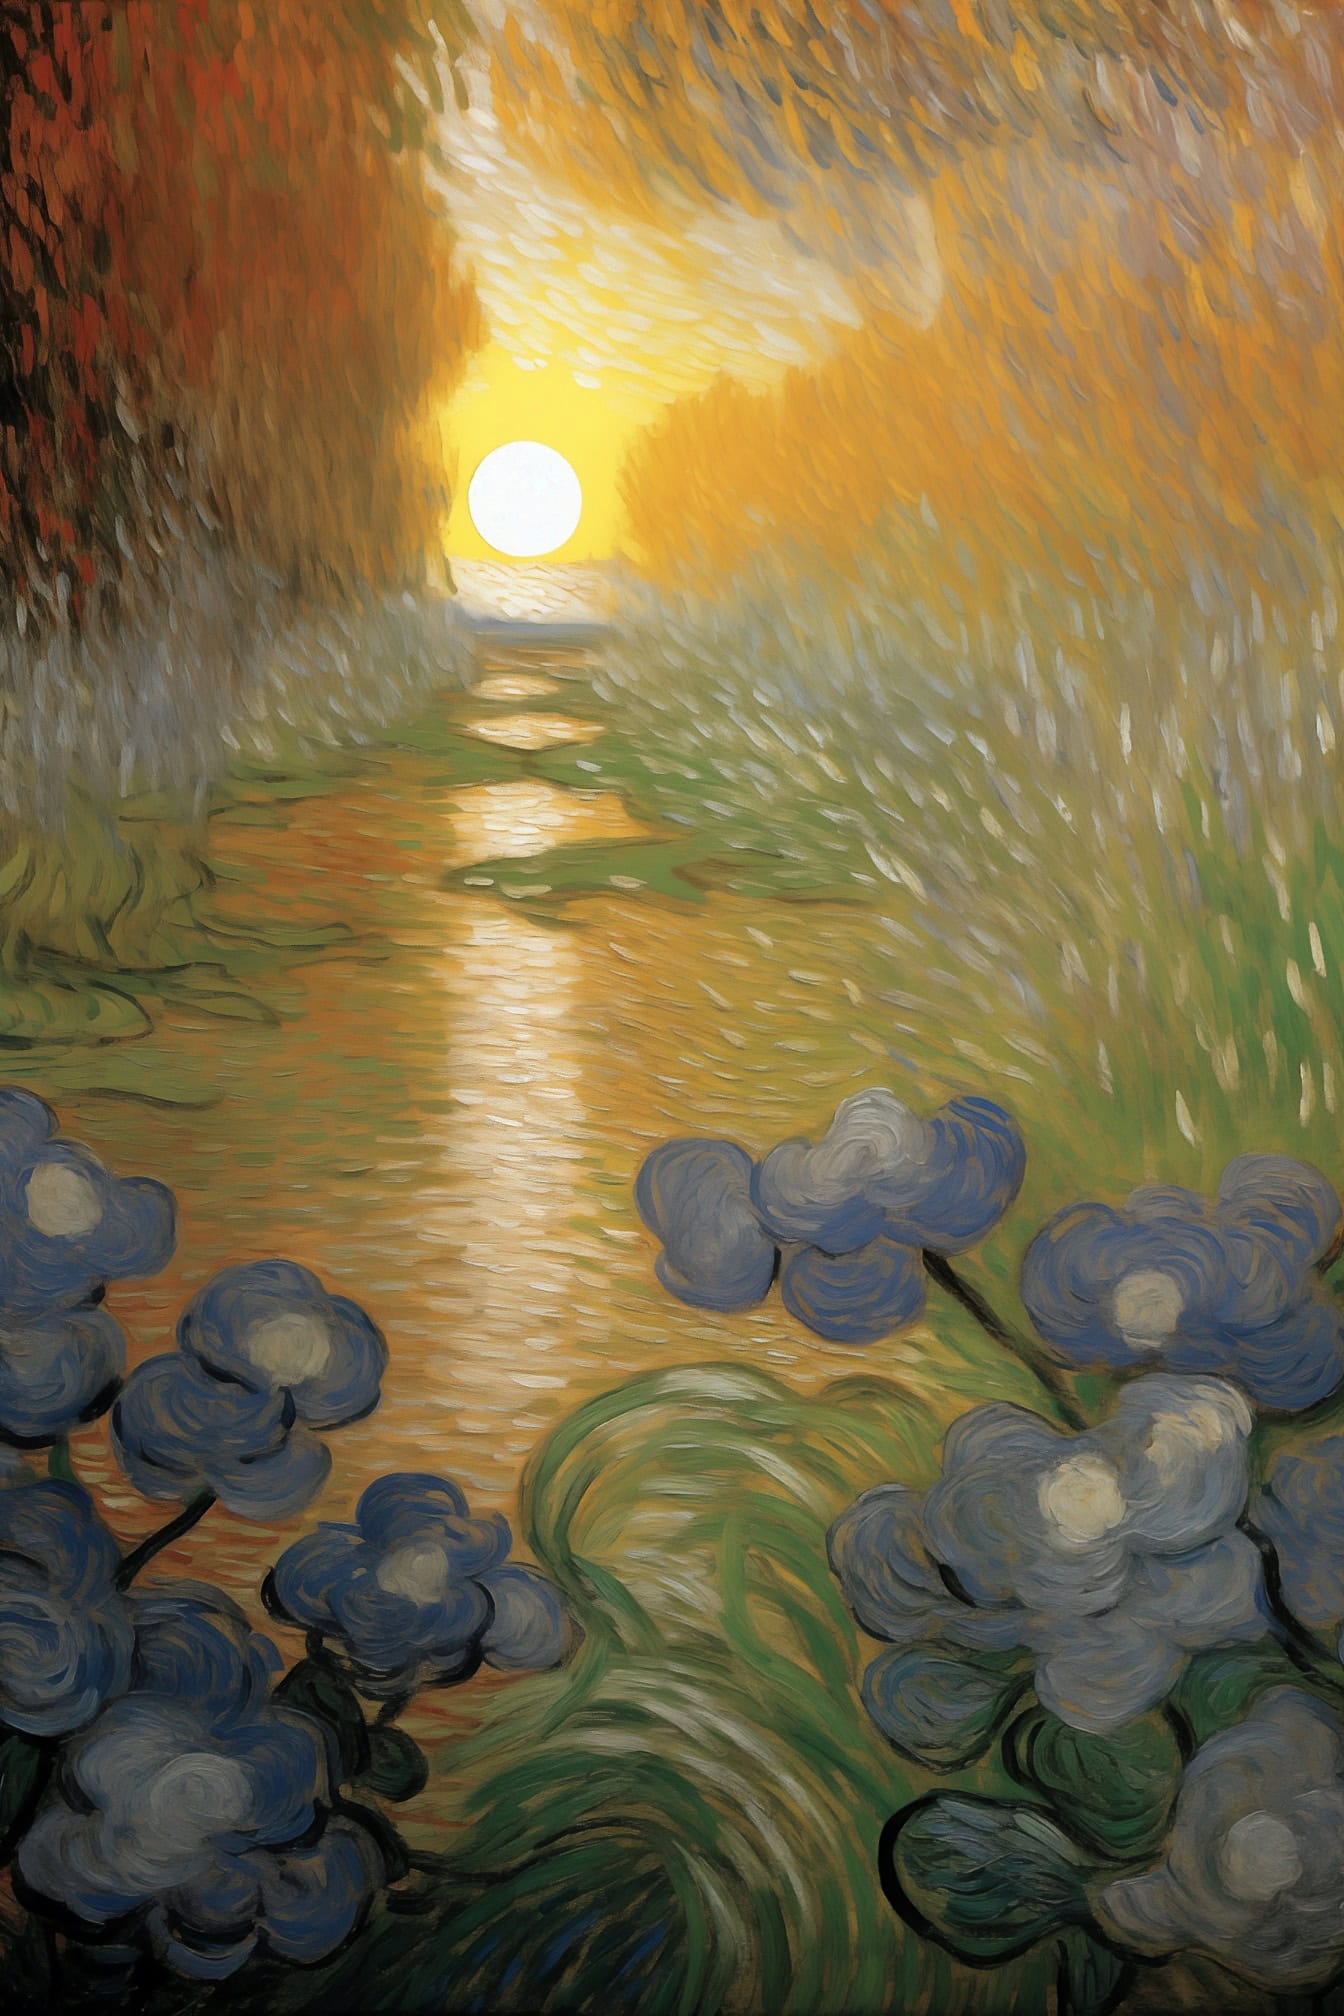 Dipinto ad olio di fiori e acqua al tramonto in uno stile del famoso artista Van Gogh